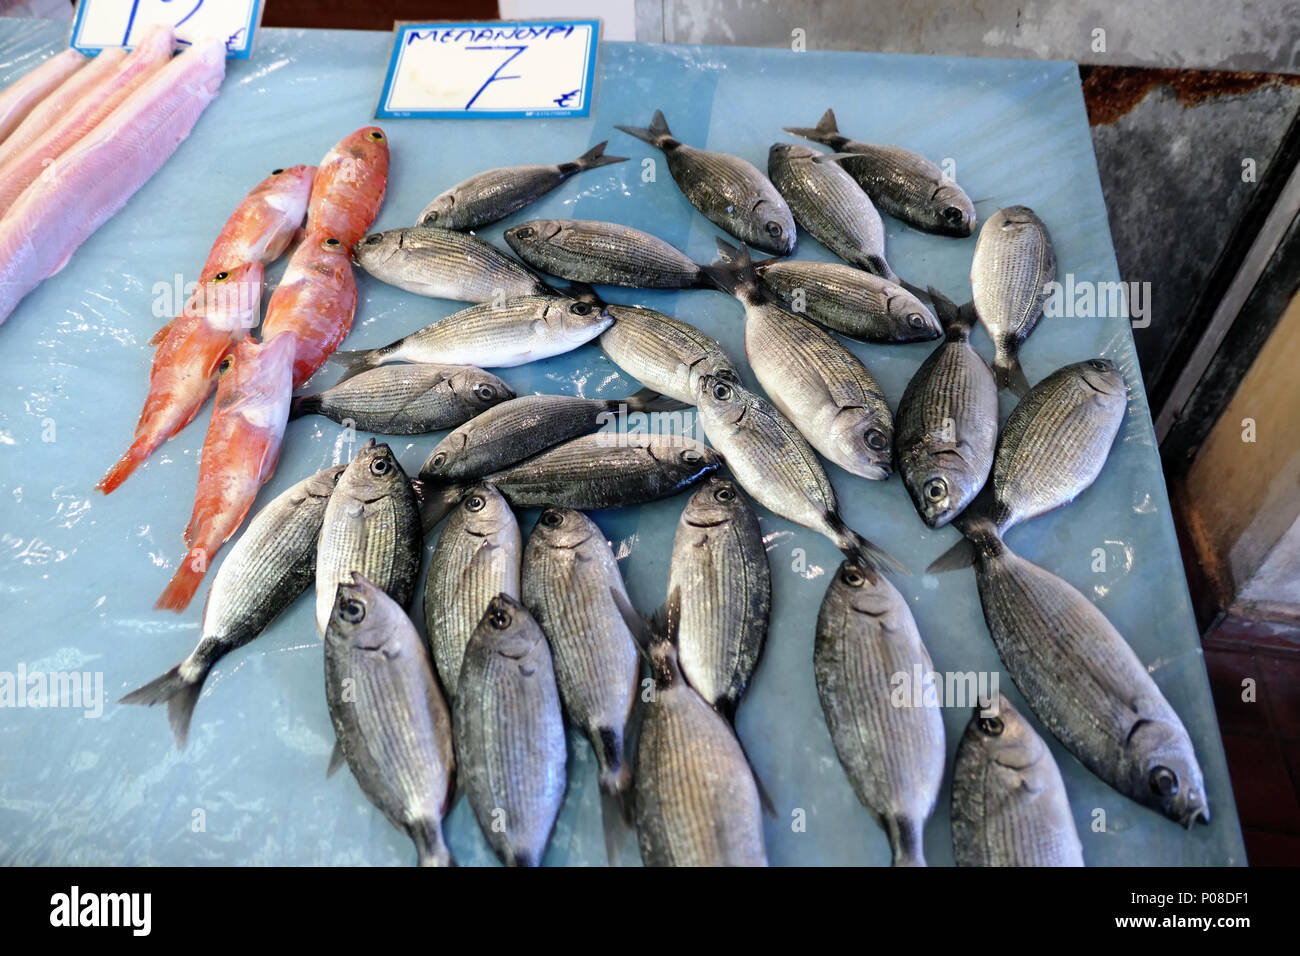 Marché de poissons traditionnels de la ville de Corfou (Kerkyra) en Grèce. Différents types de poissons méditerranéens pour la vente. Banque D'Images